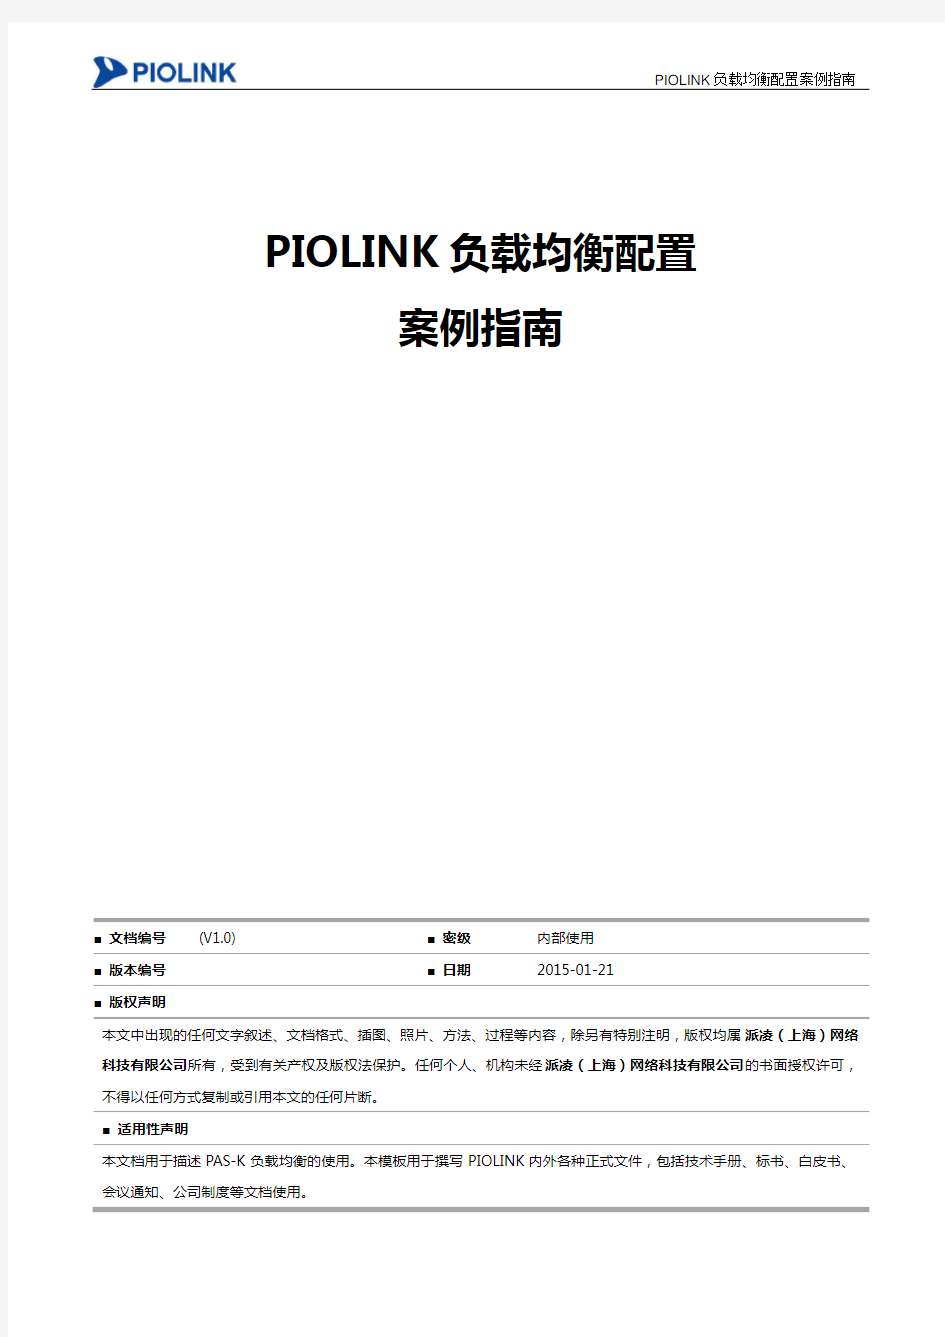 PIOLINK负载均衡衡配置案例指南-V2.0